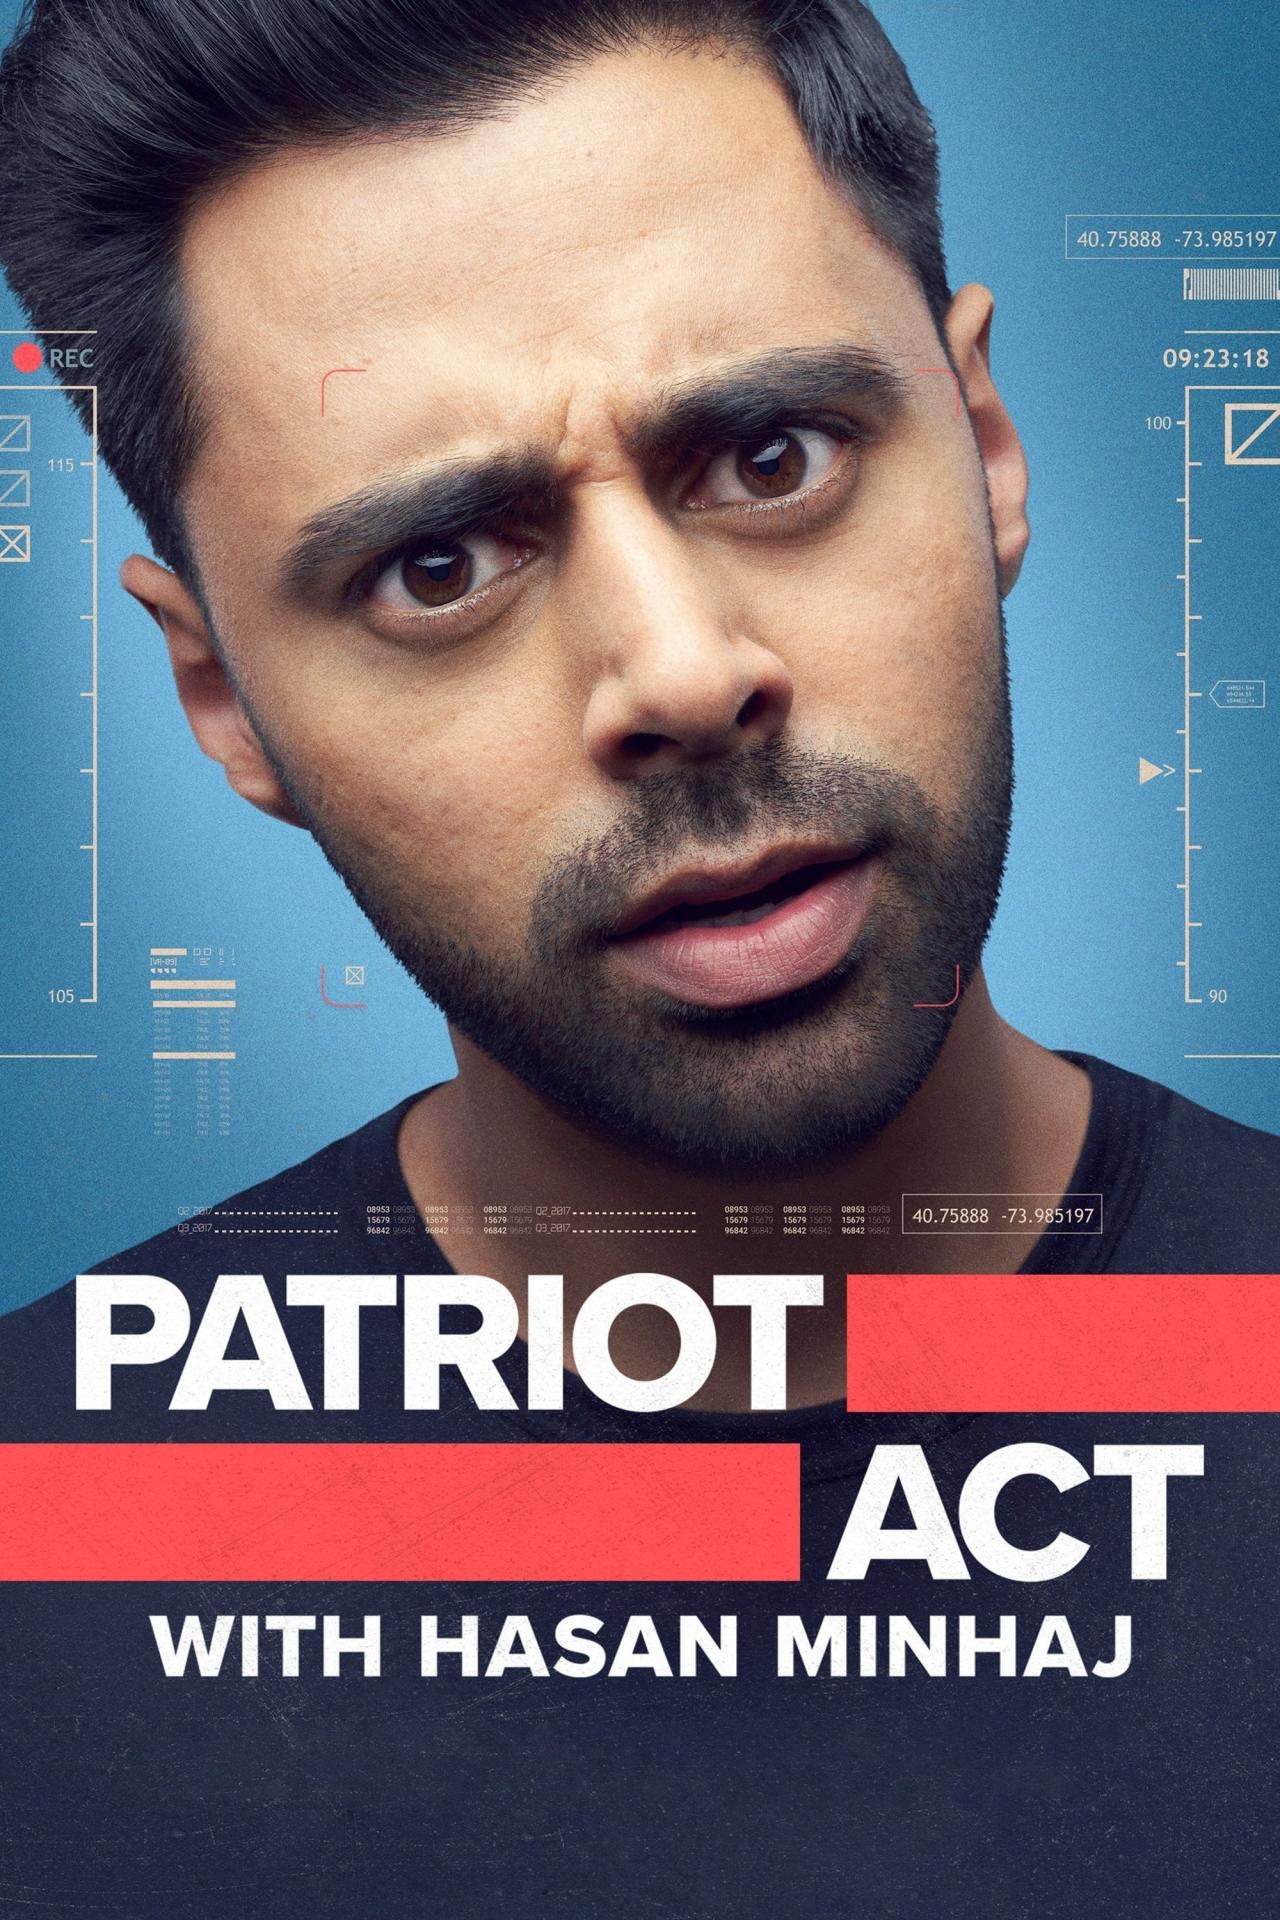 Affiche de la série Hasan Minhaj : Un patriote américain poster